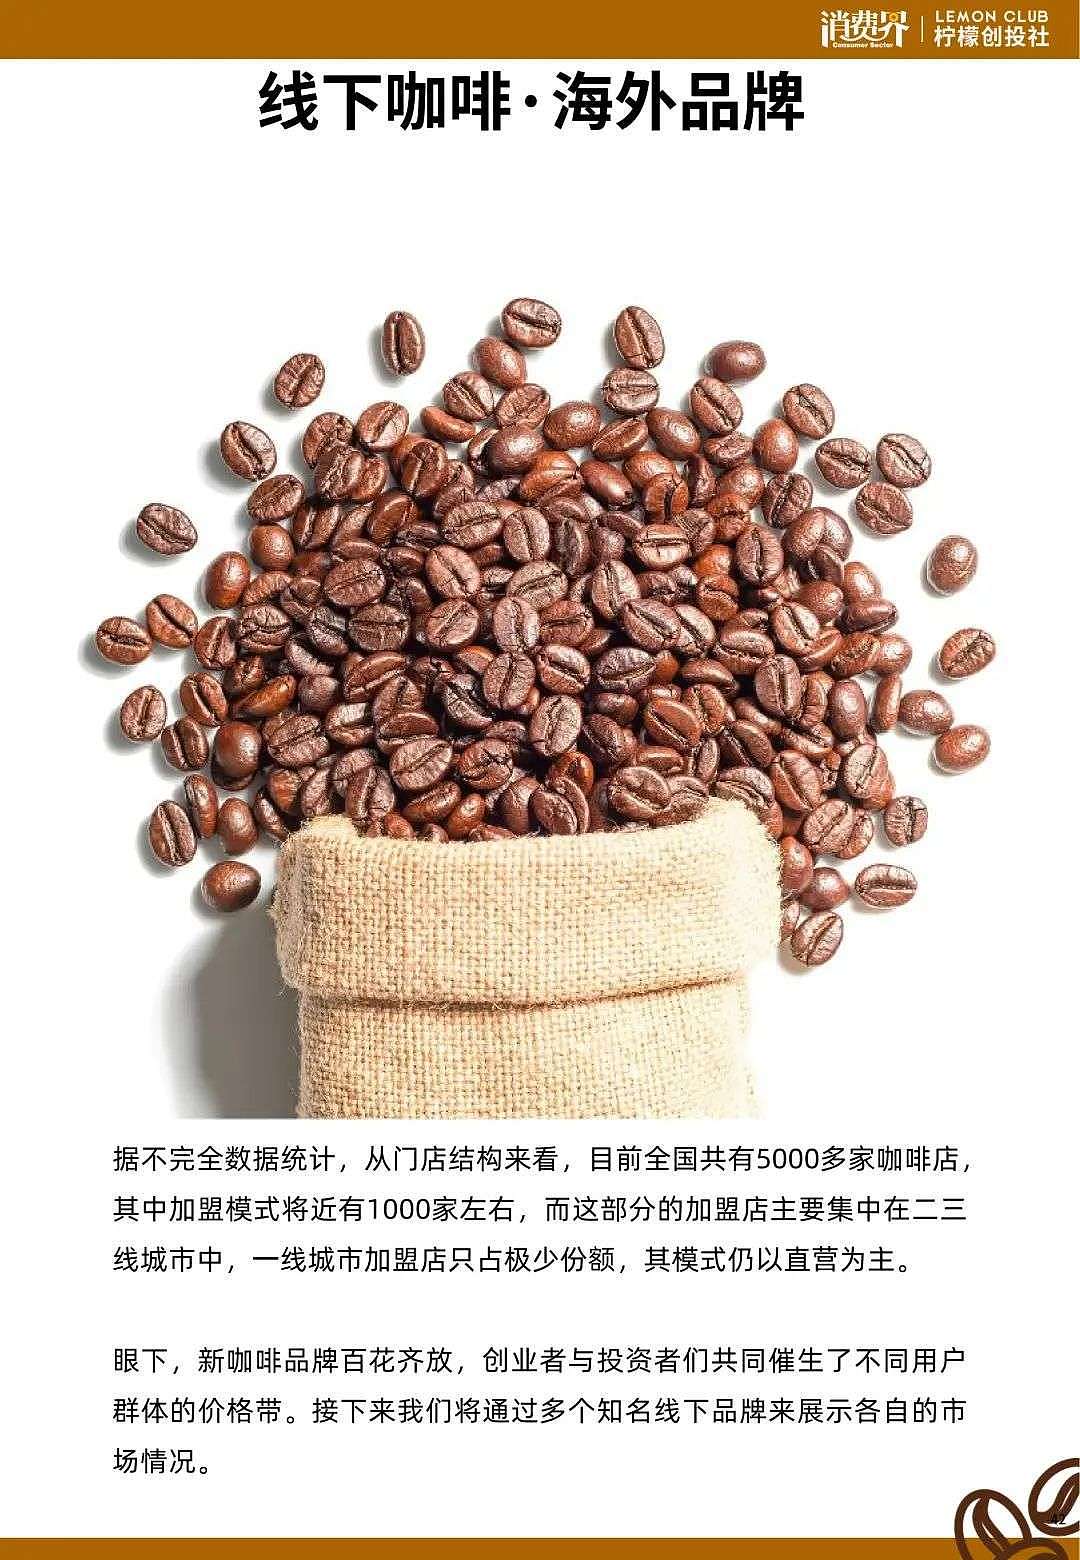 2021中国咖啡行业发展白皮书 - 46